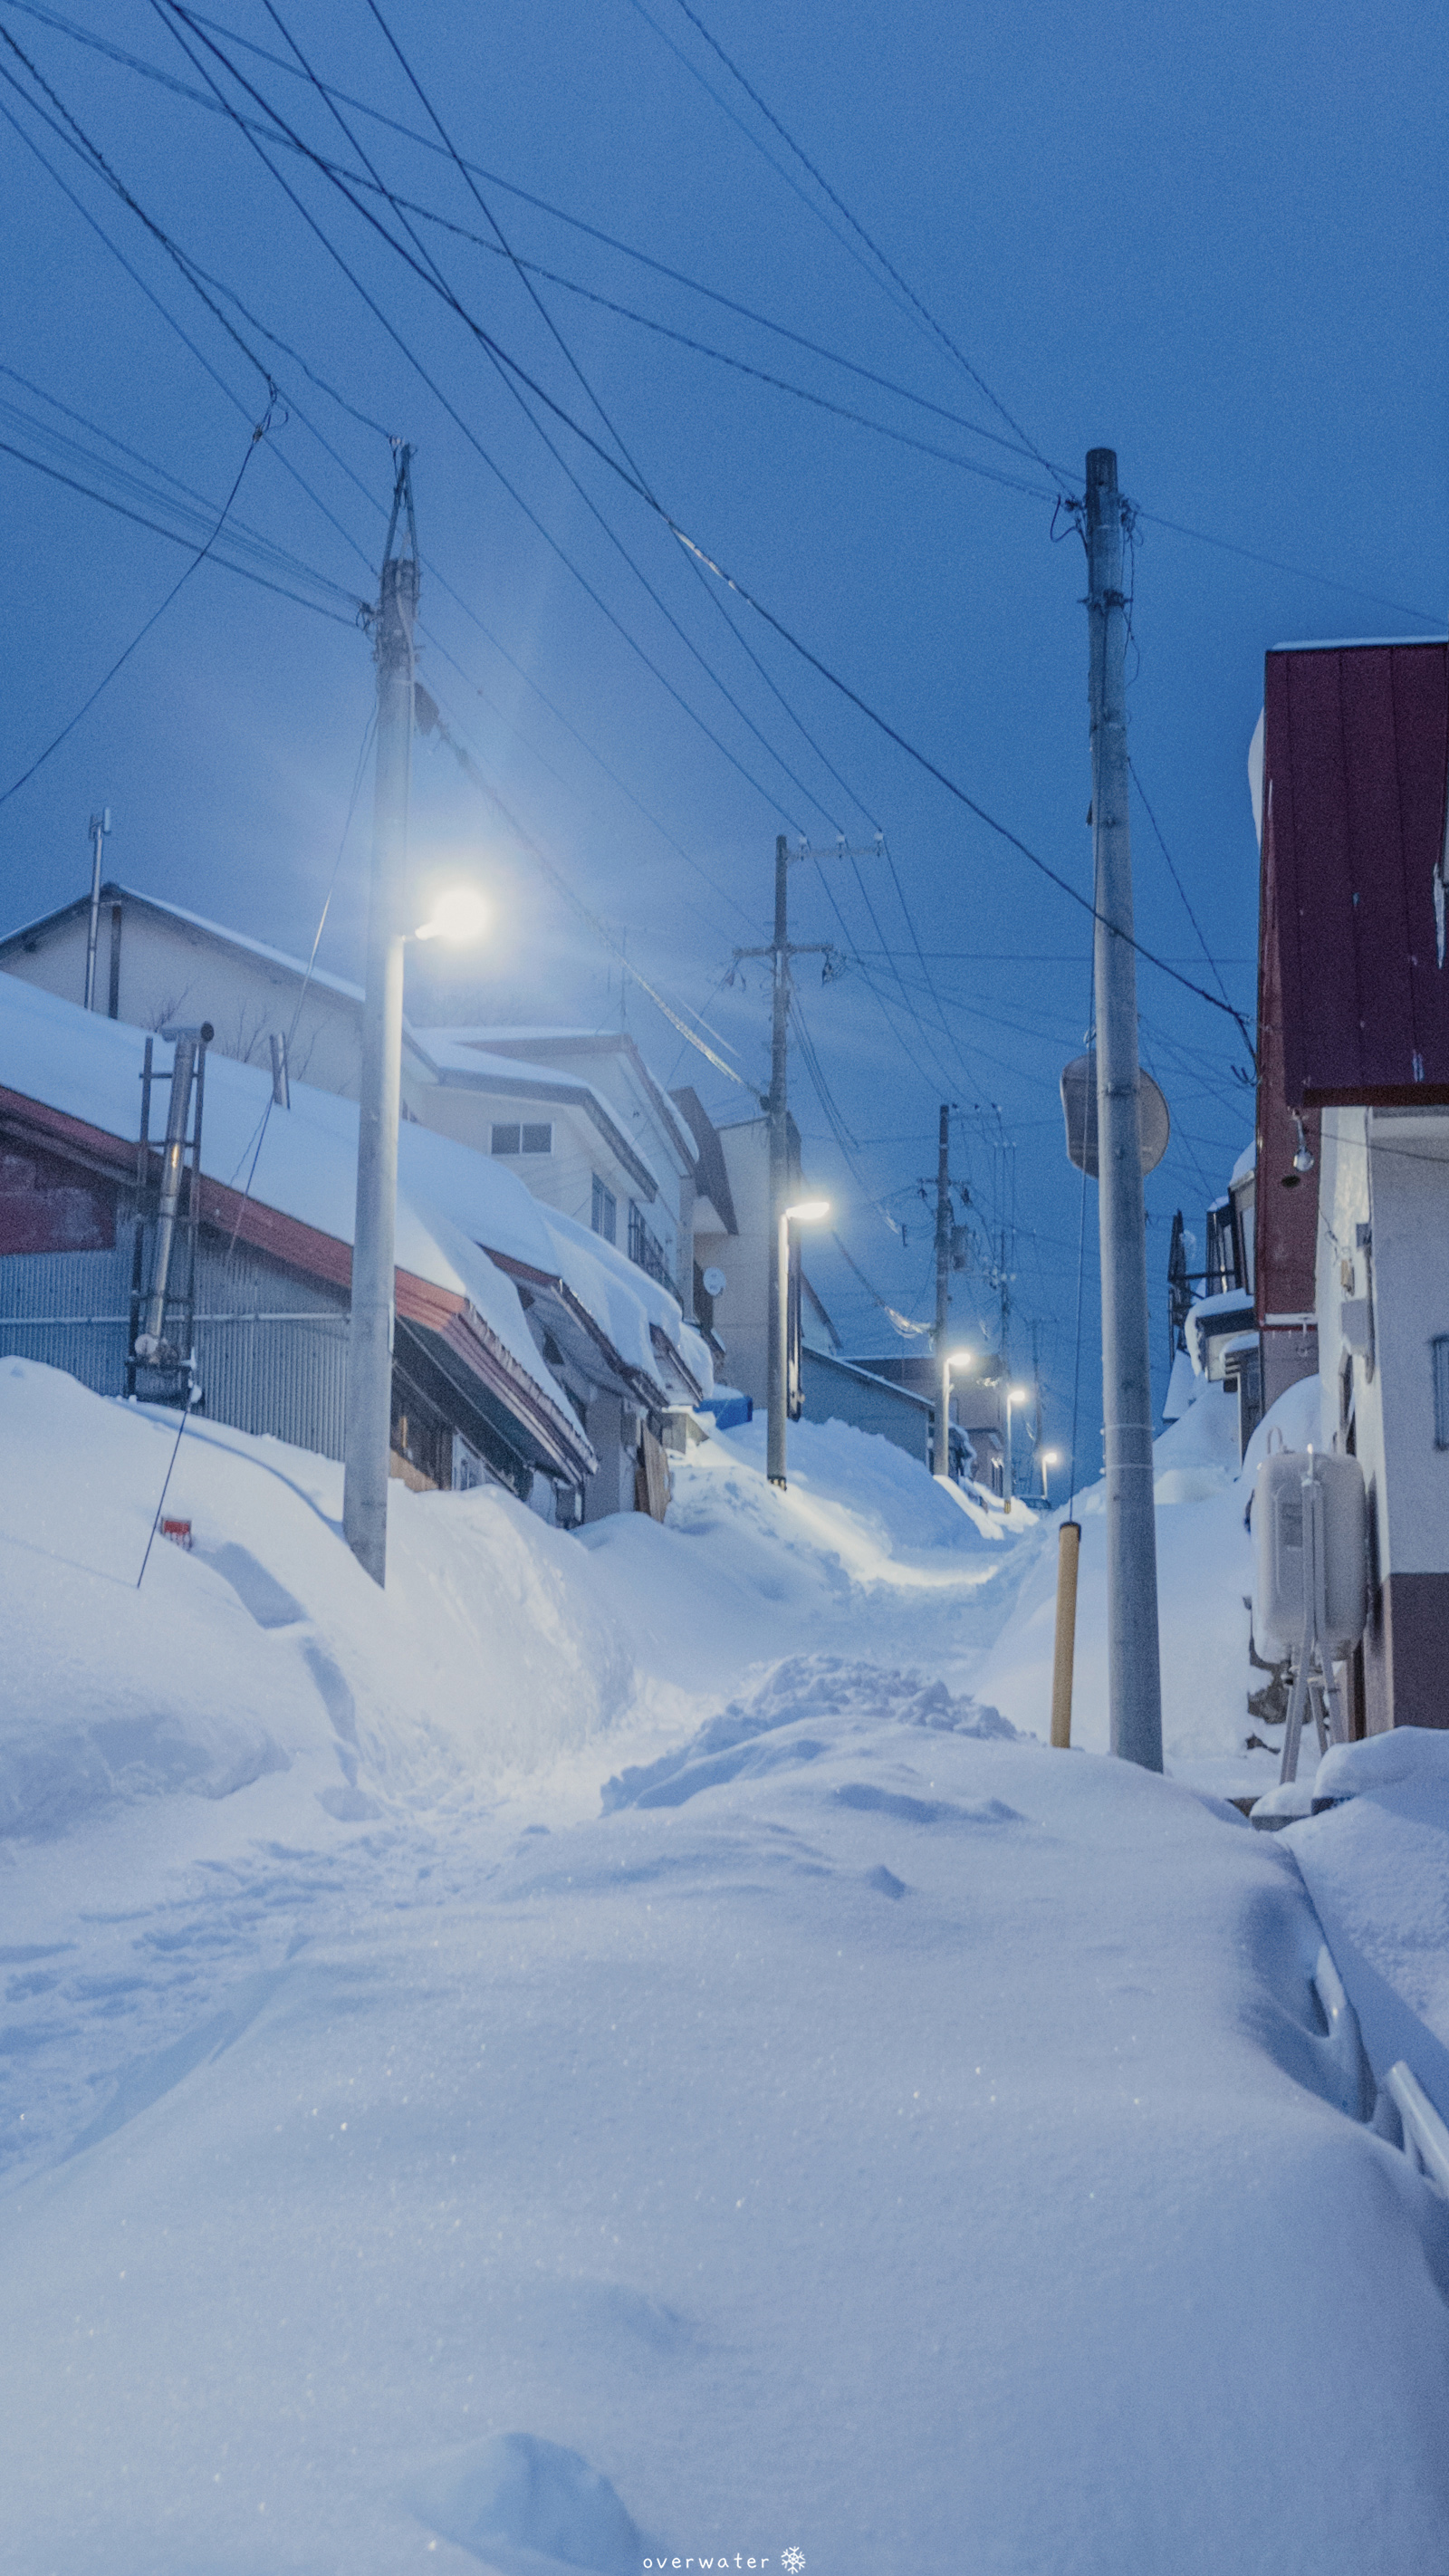 北海道雪景手机壁纸 堆糖 美图壁纸兴趣社区